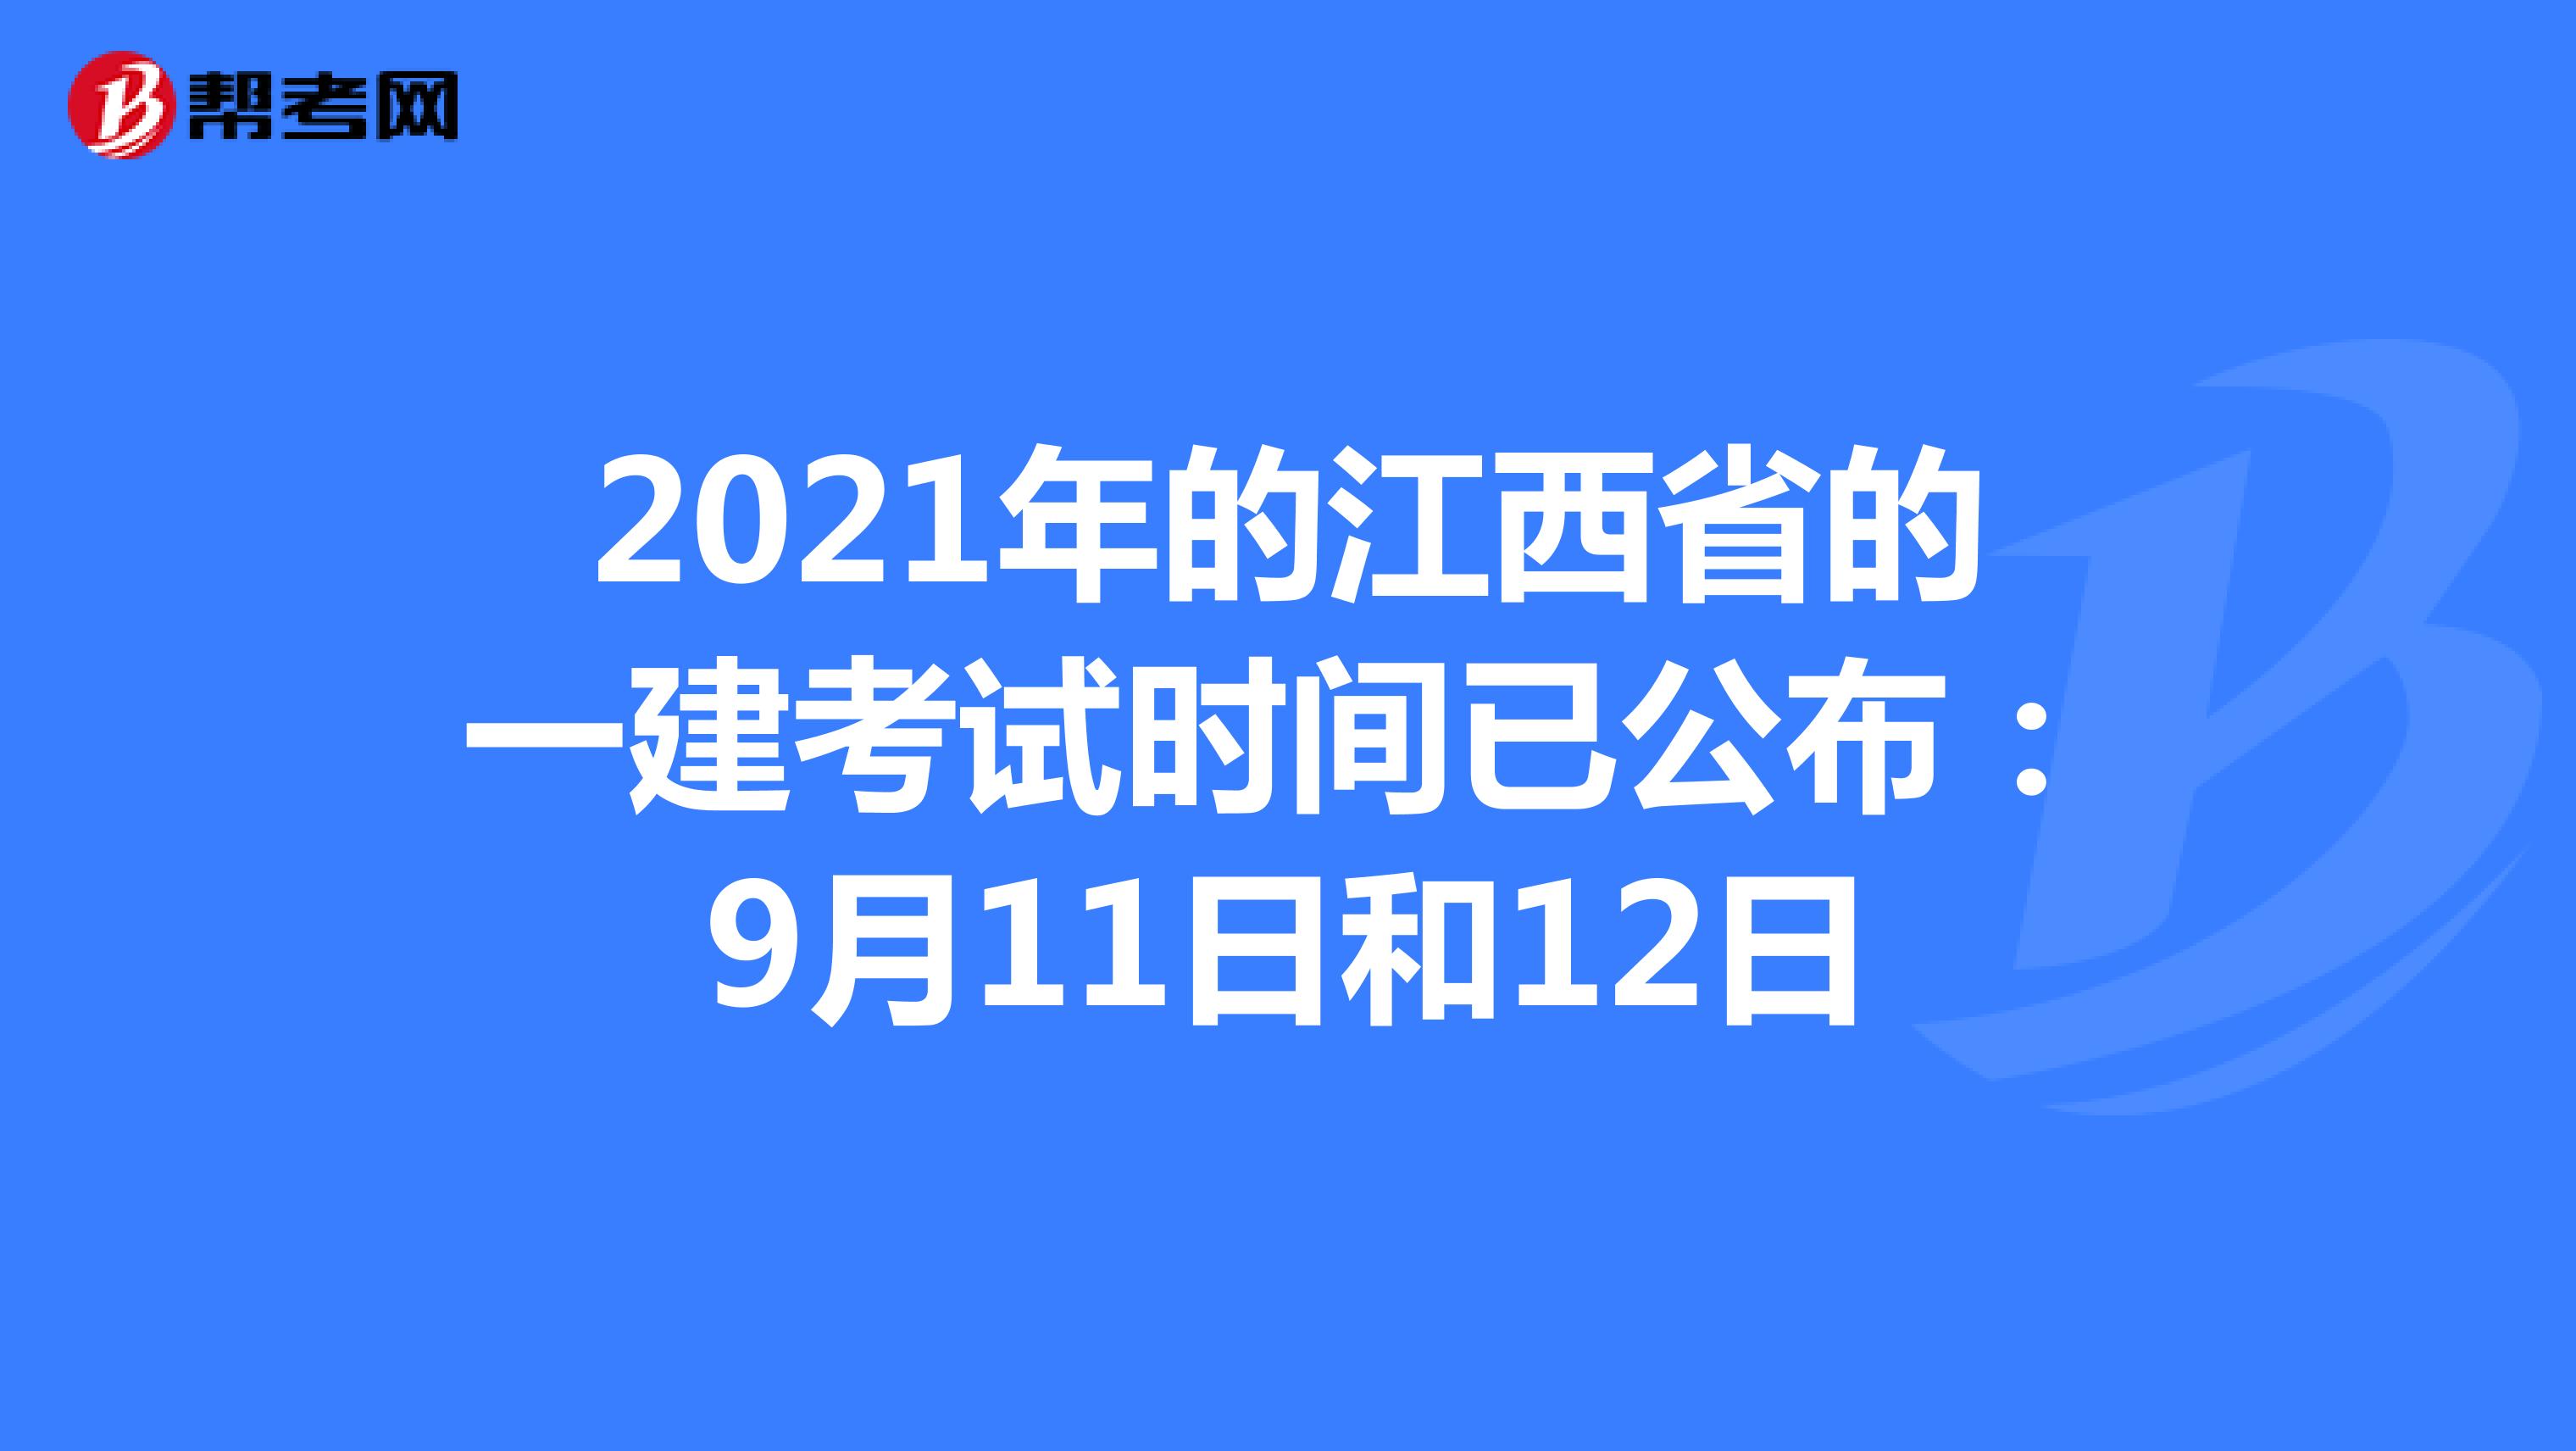 2021年的江西省的一建考试时间已公布：9月11日和12日